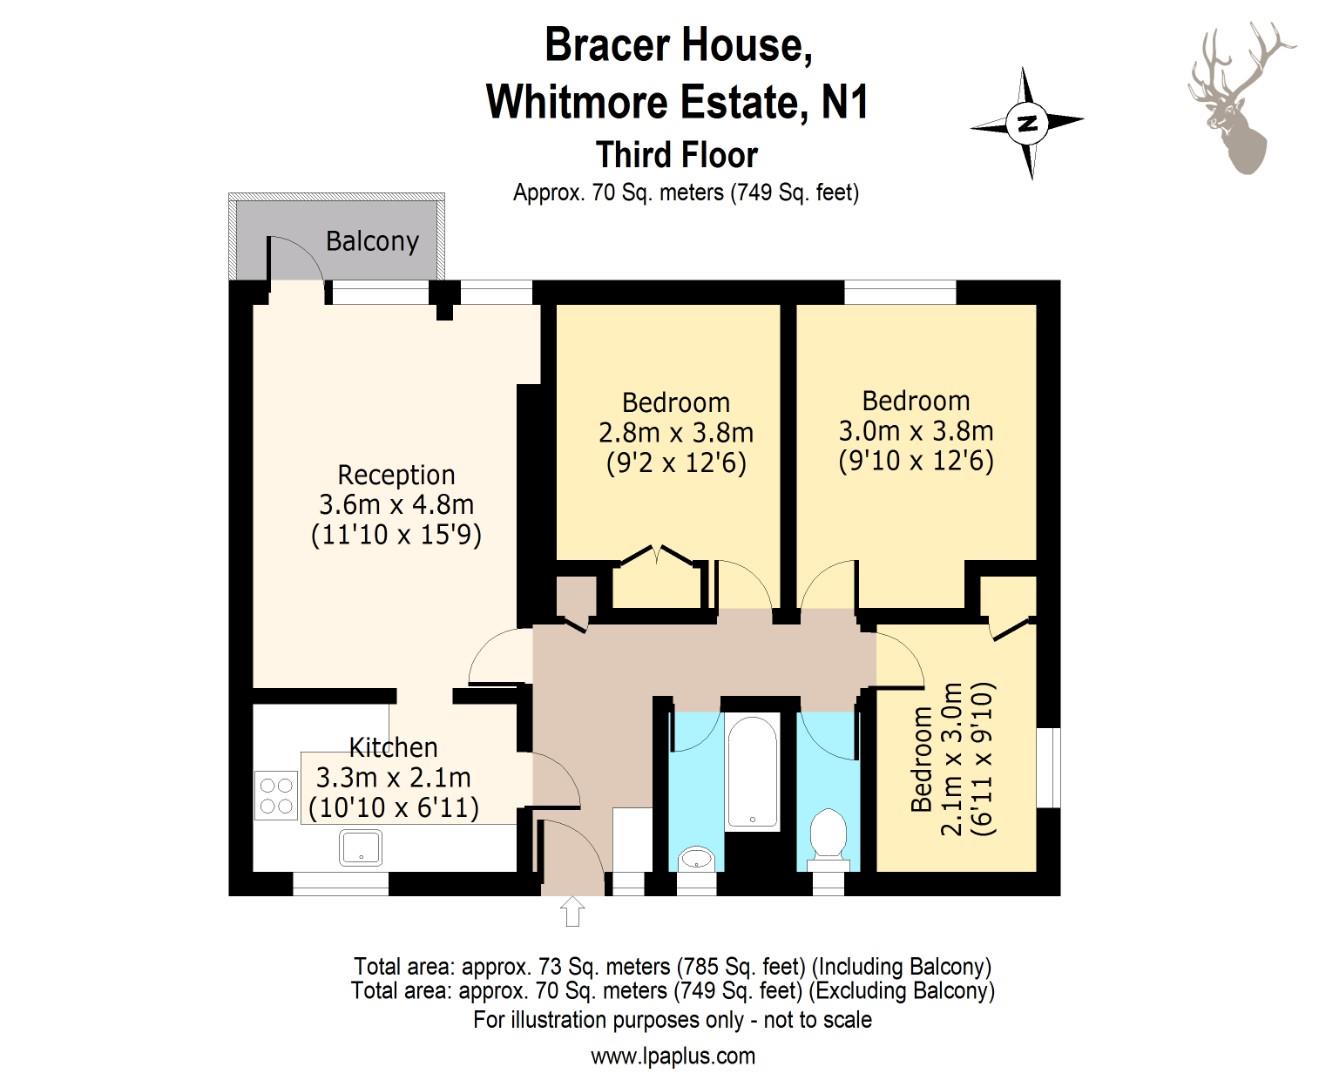 Bracer House Whitmore Estate.jpg